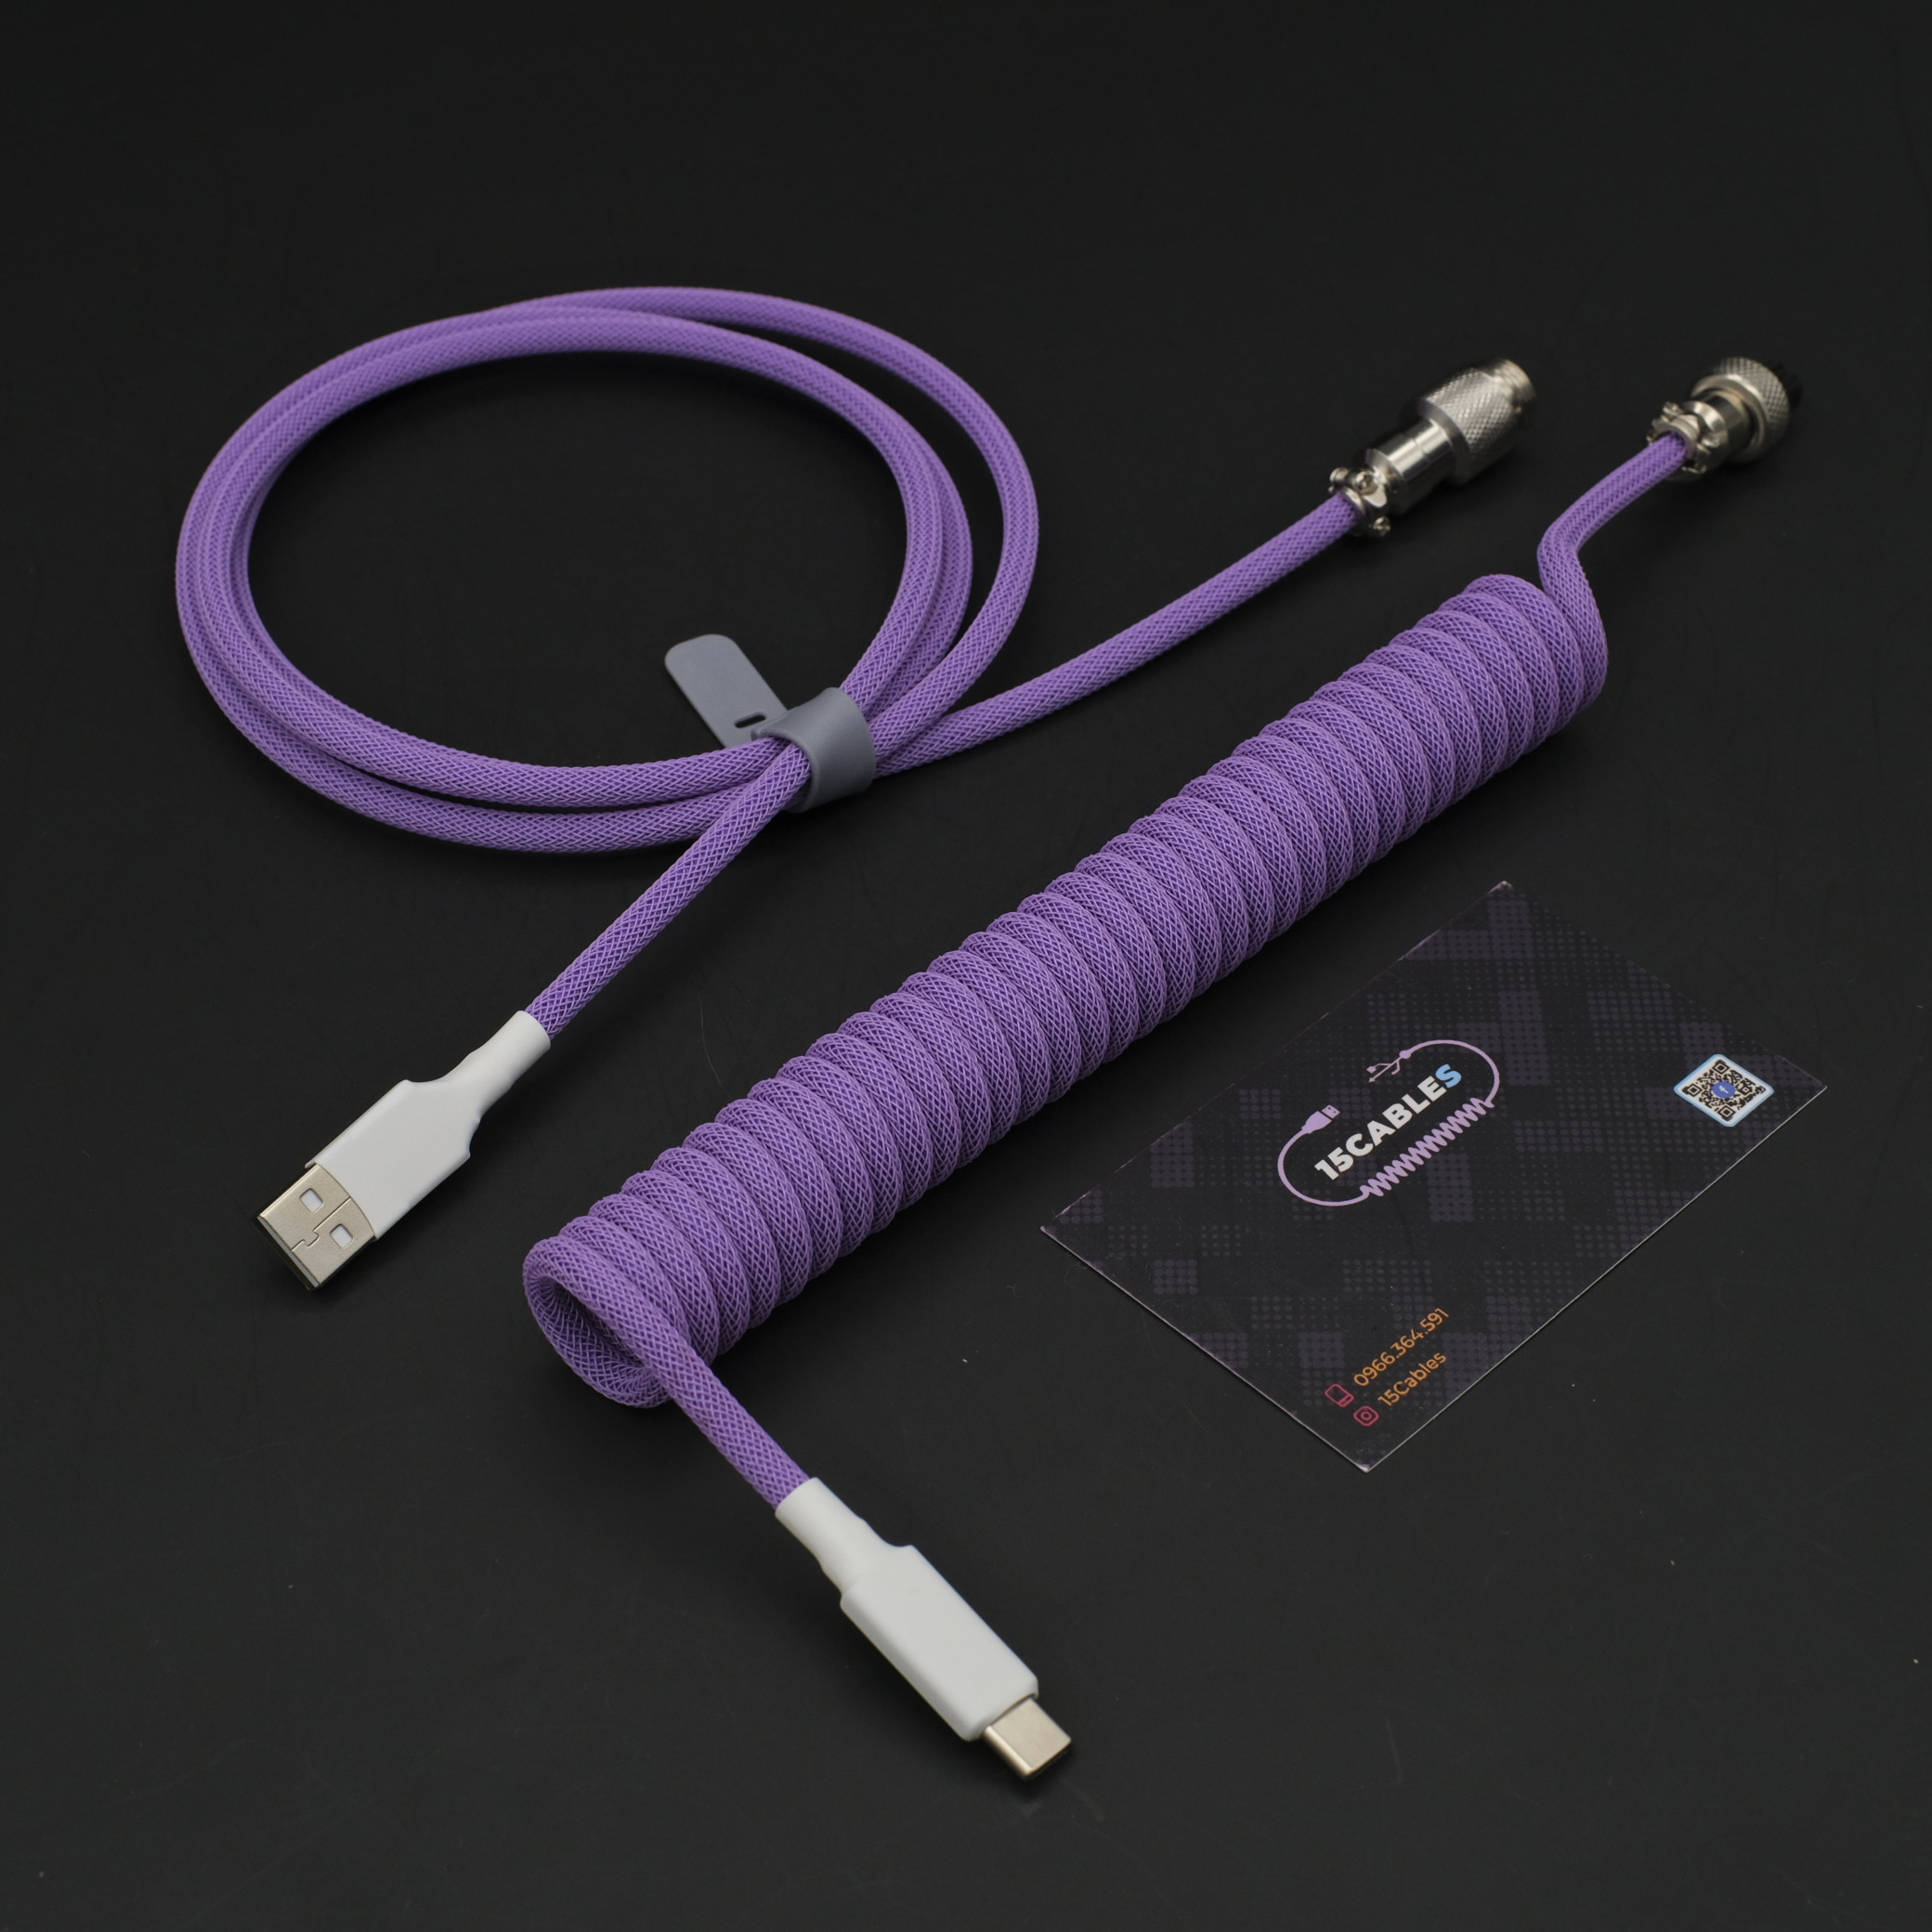 NKT kabel 1 x 1,5mm2 sort plast kabel - Fleksibelt plastkabel 15kr pr. meter